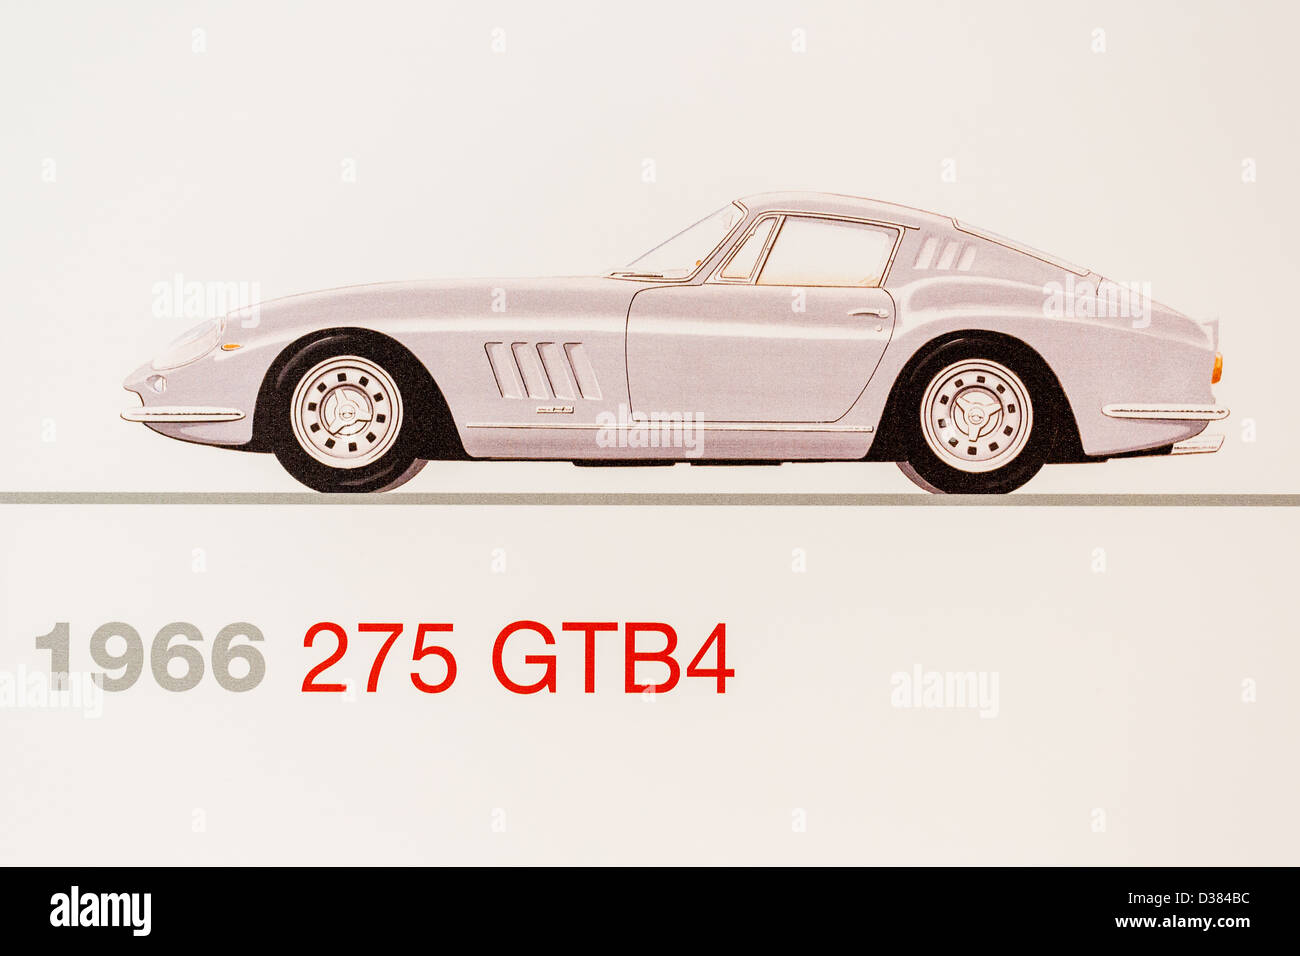 Graphic representation of a 1966 Ferrari 275 GTB4, Ferrari Museum, Maranello, Italy Stock Photo